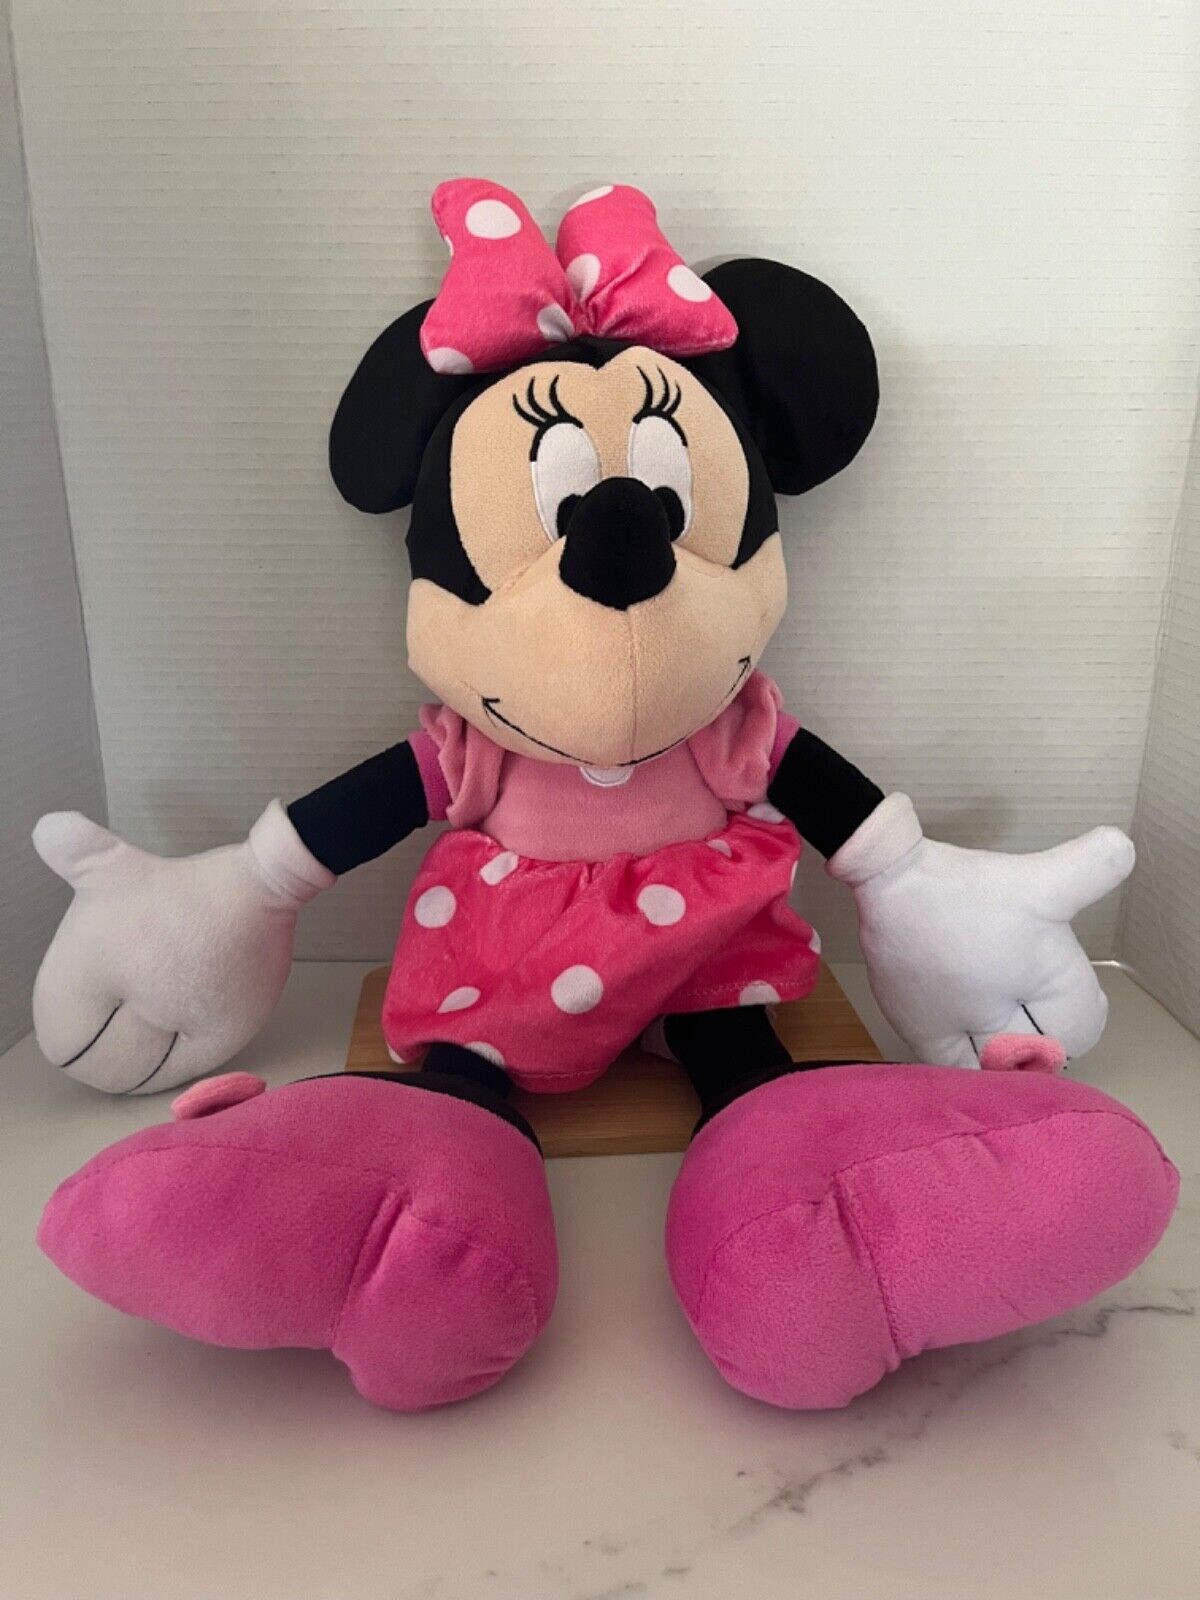 Vintage Minnie Mouse Stuffed Animal 